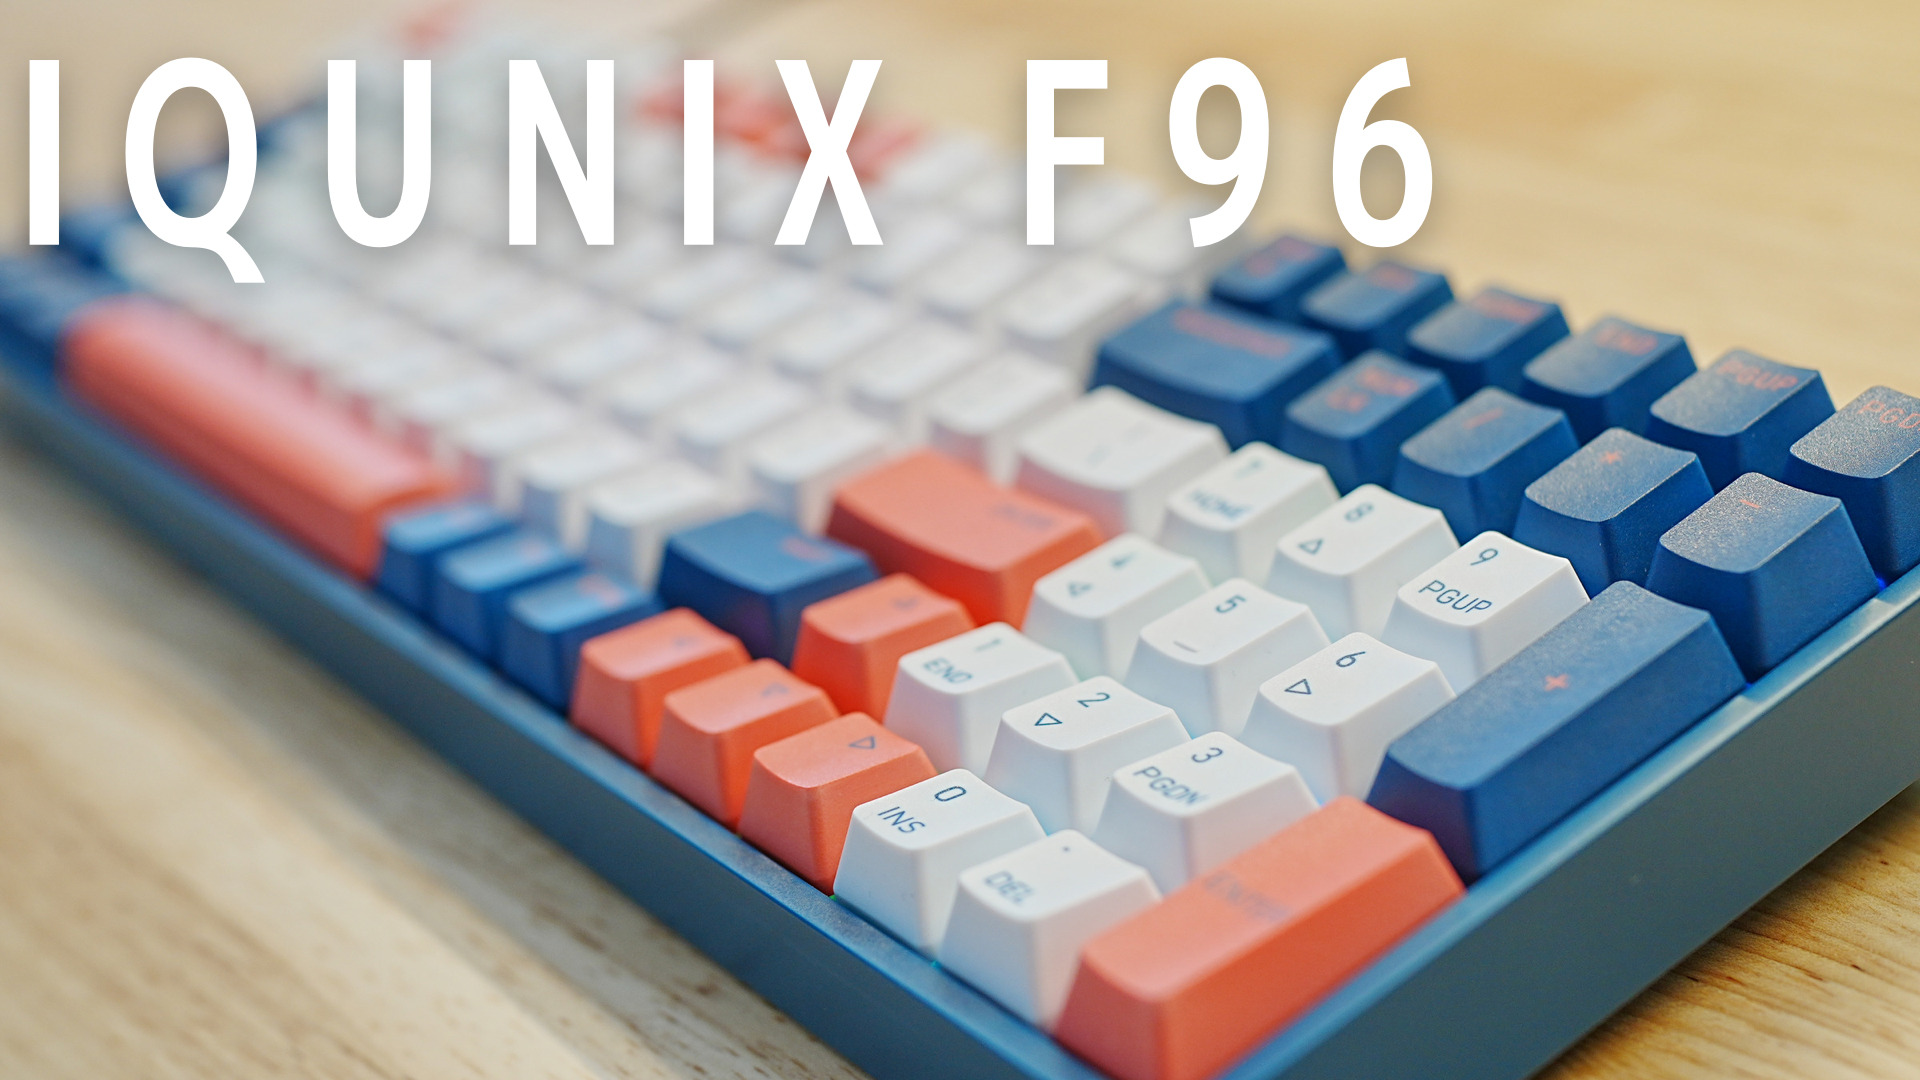 IQUNIX F96